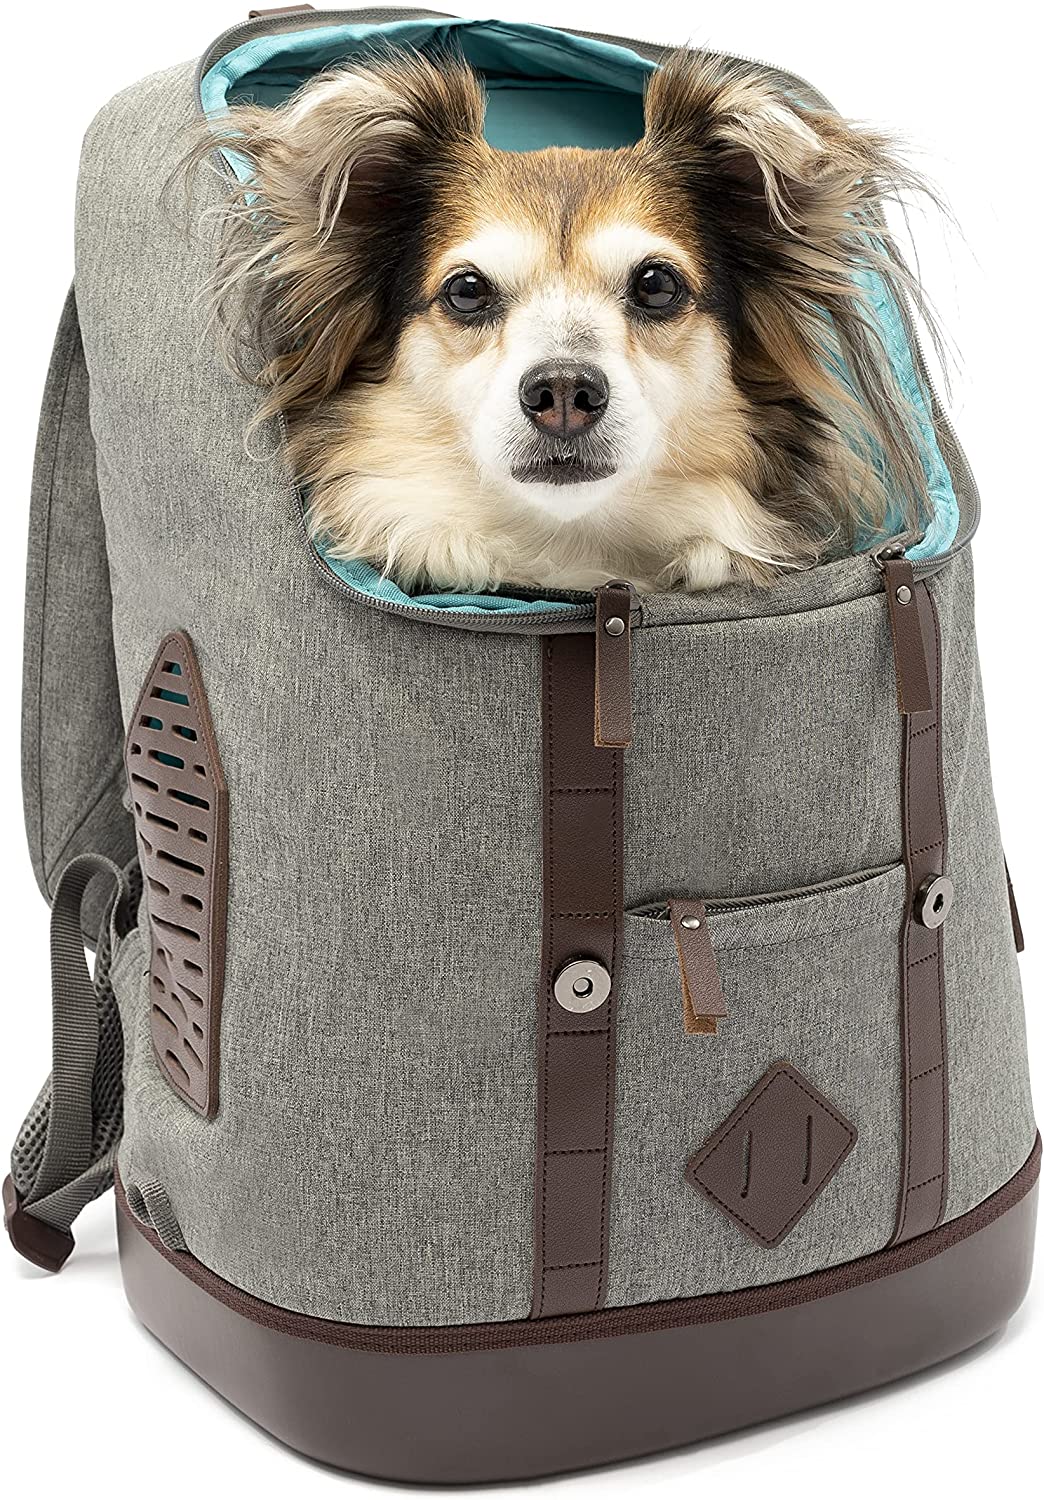 Kurgo-K9-Ruck-Sack-Dog-Carrier-Backpack